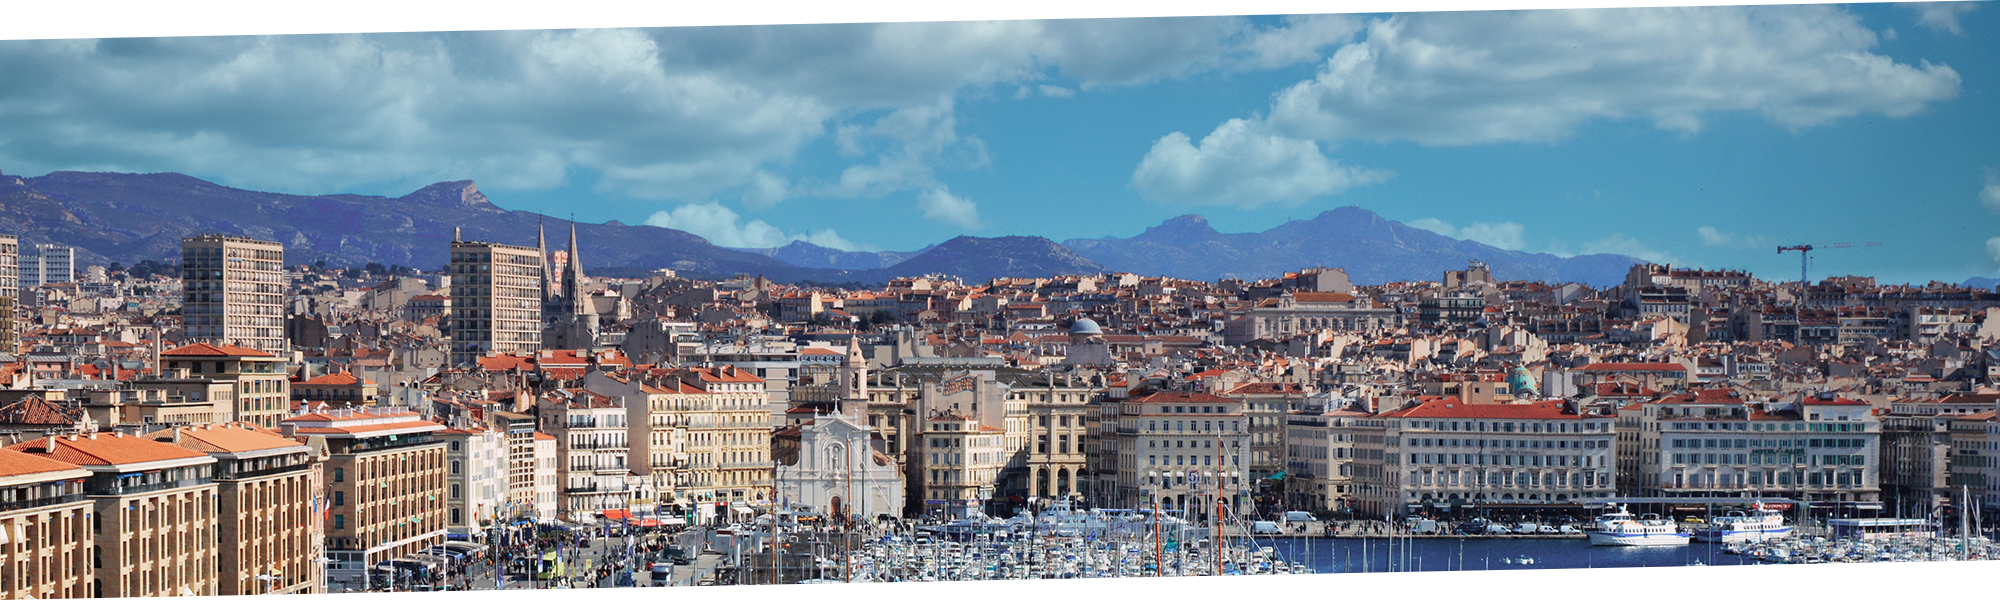 Photo panoramique de Marseille, zone à fort potentiel pour l’immobilier patrimonial, domaine d’expertise de Methys Patrimoine